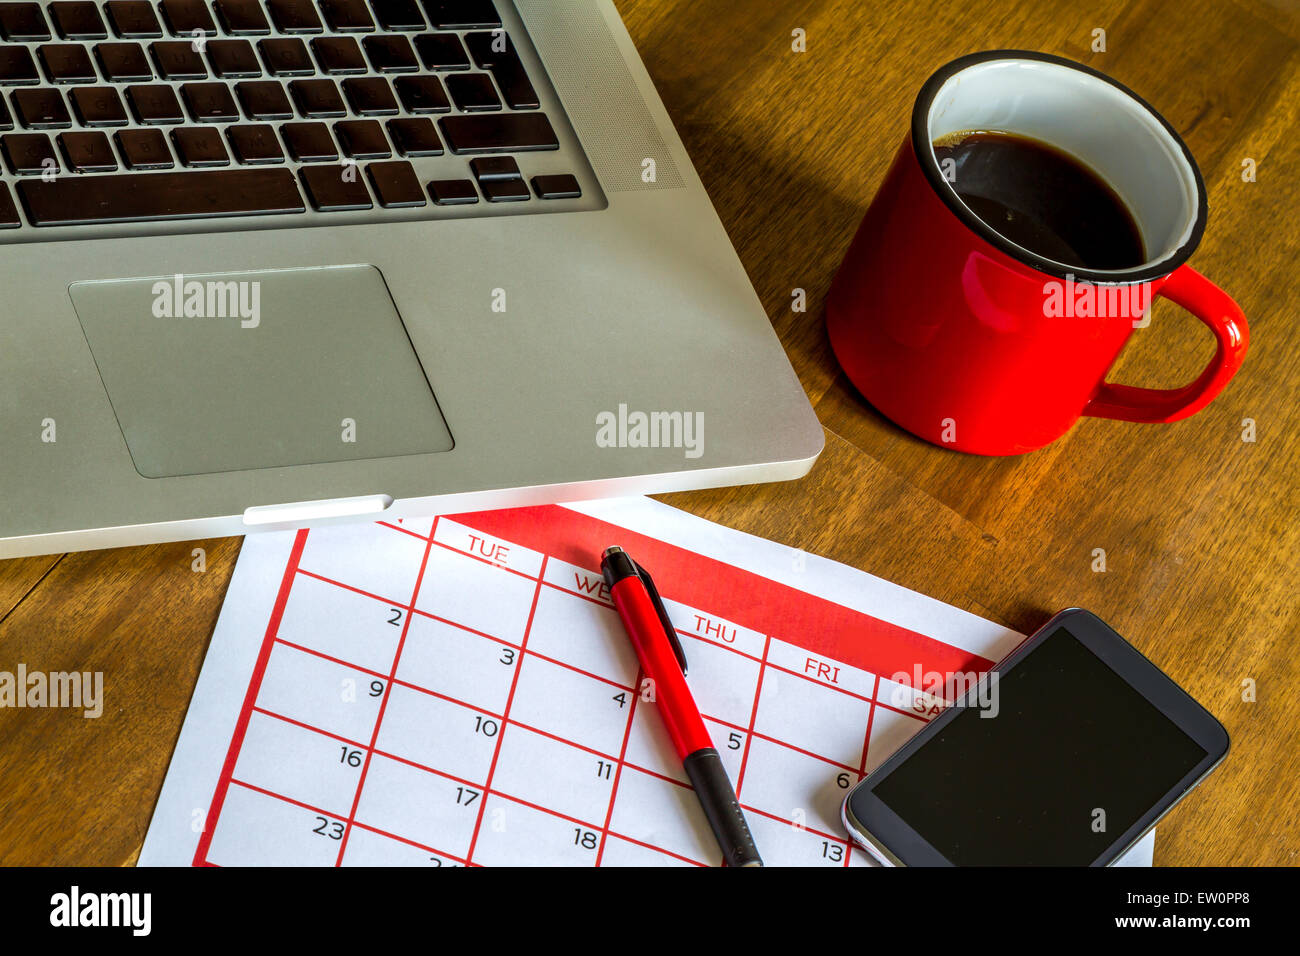 Arbeiten mit dem Laptop und Organisation von monatlichen Aktivitäten und Termine im Kalender Stockfoto